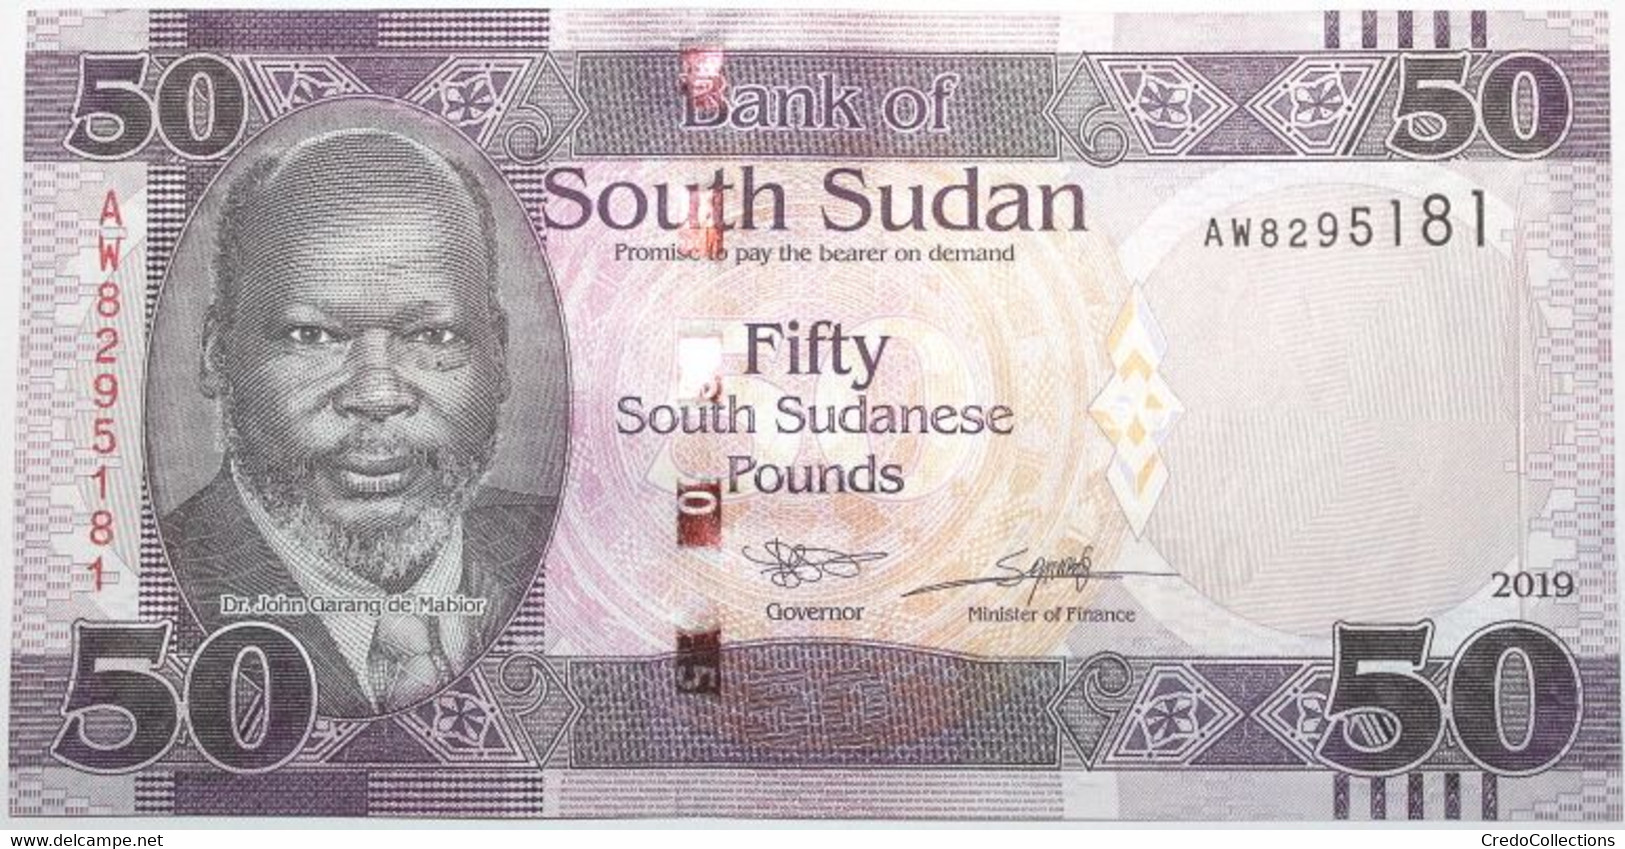 Soudan Du Sud - 50 Pounds - 2019 - PICK 14d - NEUF - Sudan Del Sud